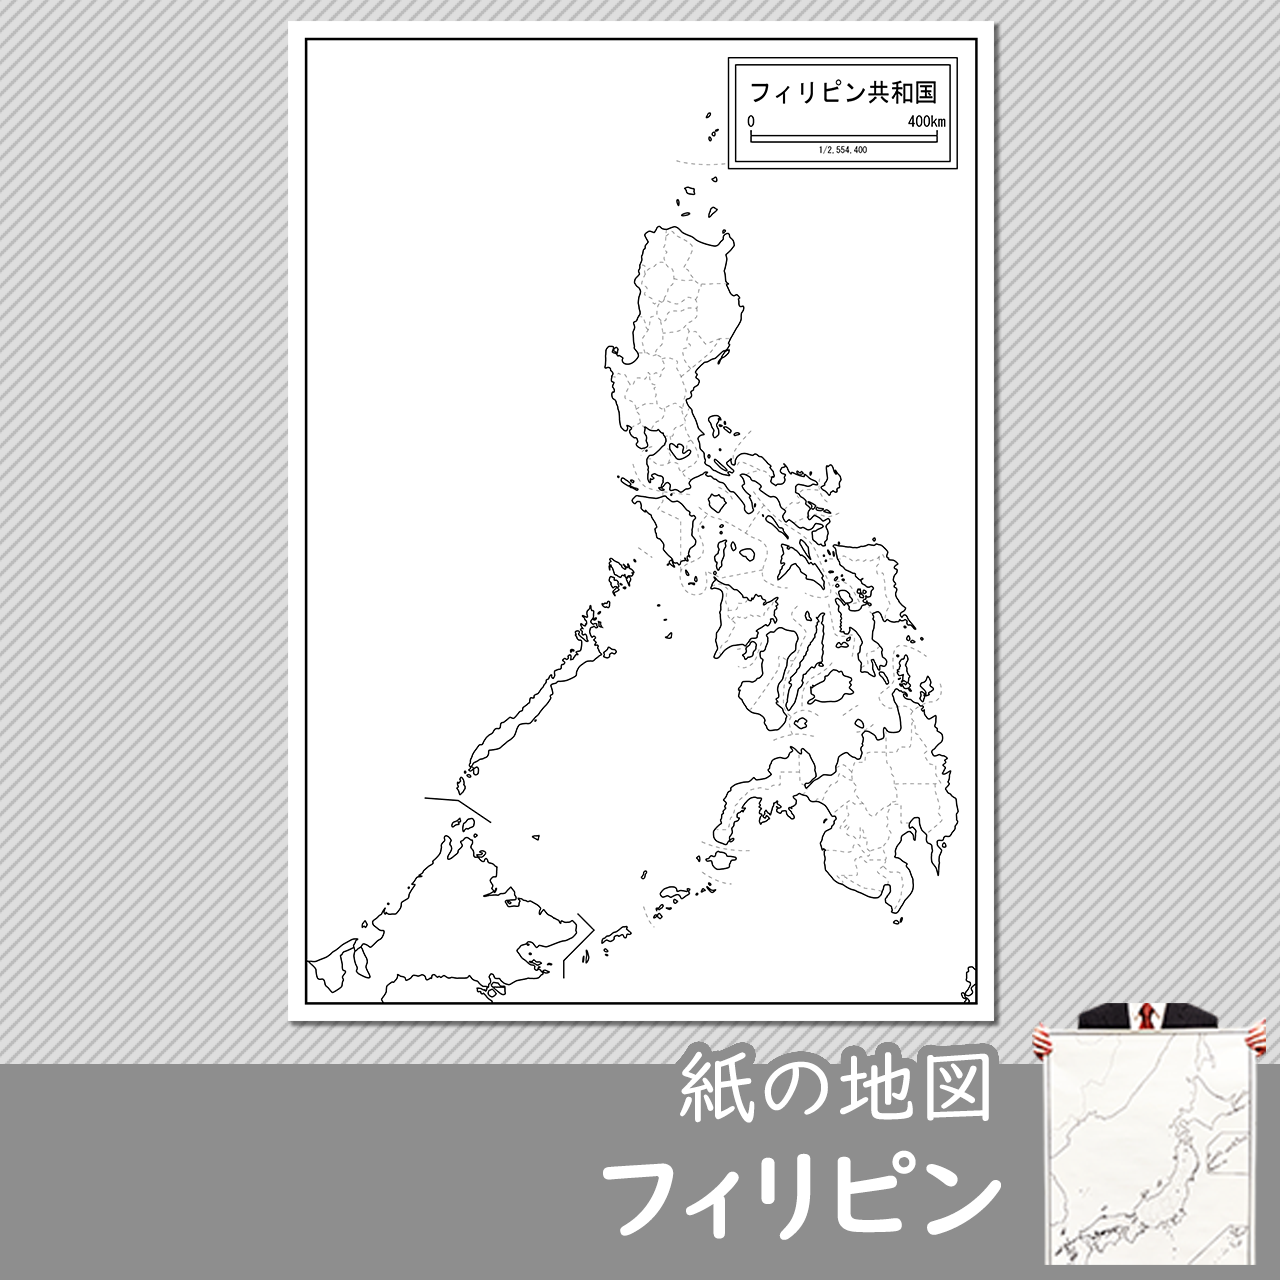 フィリピンの紙の白地図のサムネイル